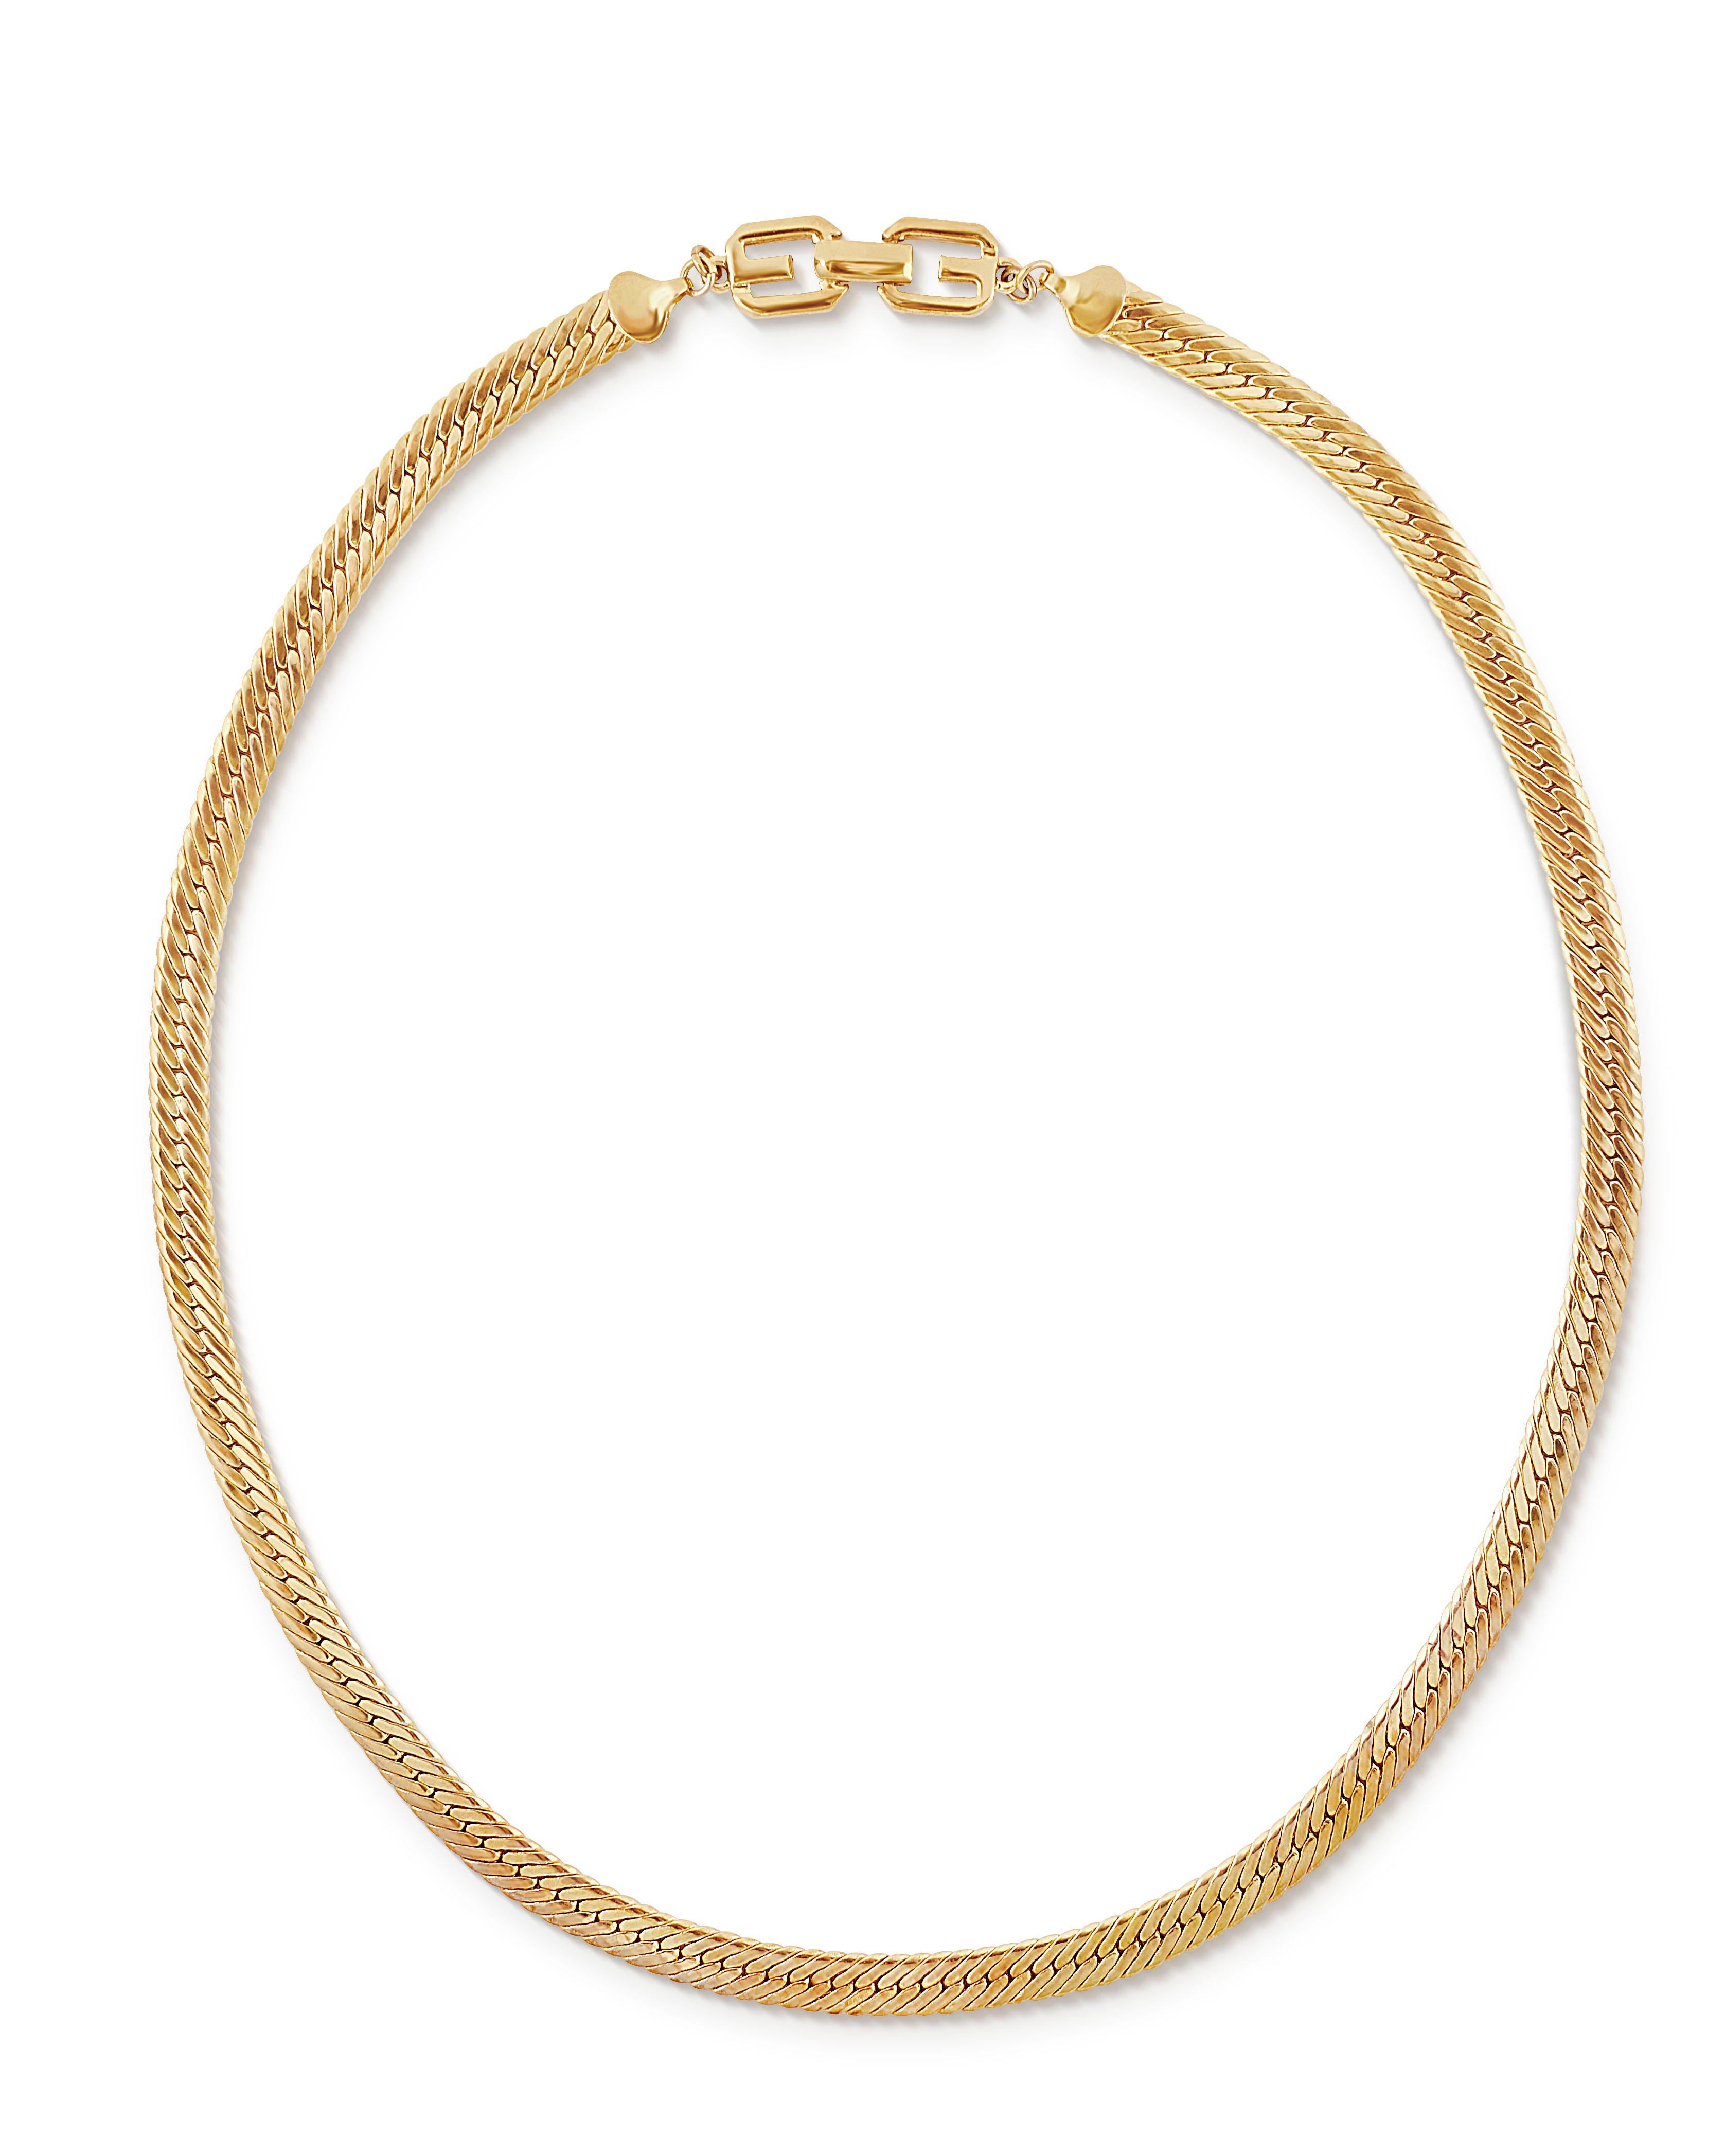 Vintage 1980er Givenchy Fischgrätenkette aus Goldblech.  Diese lange Heritage-Halskette besteht aus einer flachen, breiten Fischgrätenkette mit einem markanten Doppel-G-Logo-Verschluss.  Länge 26 Inch, Breite etwas mehr als 1/4 Inch mit Faltschließe